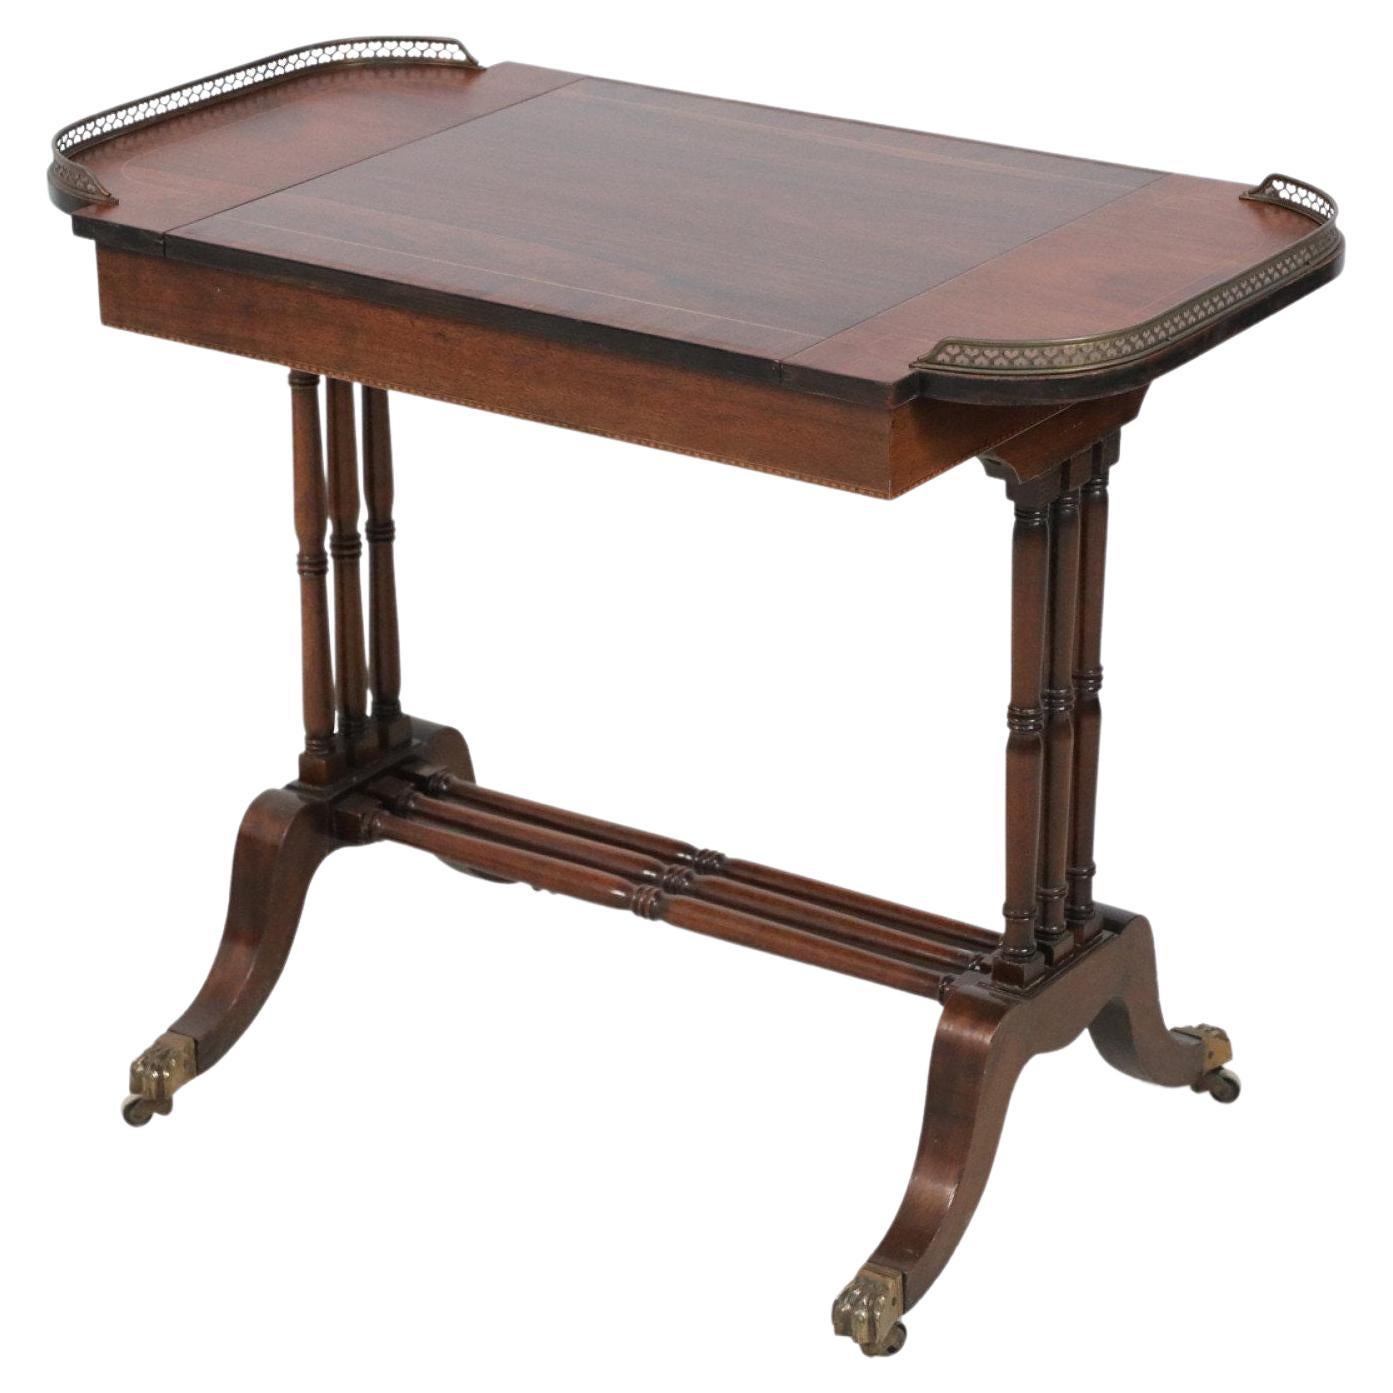 Table de jeu en bois de style Régence anglaise